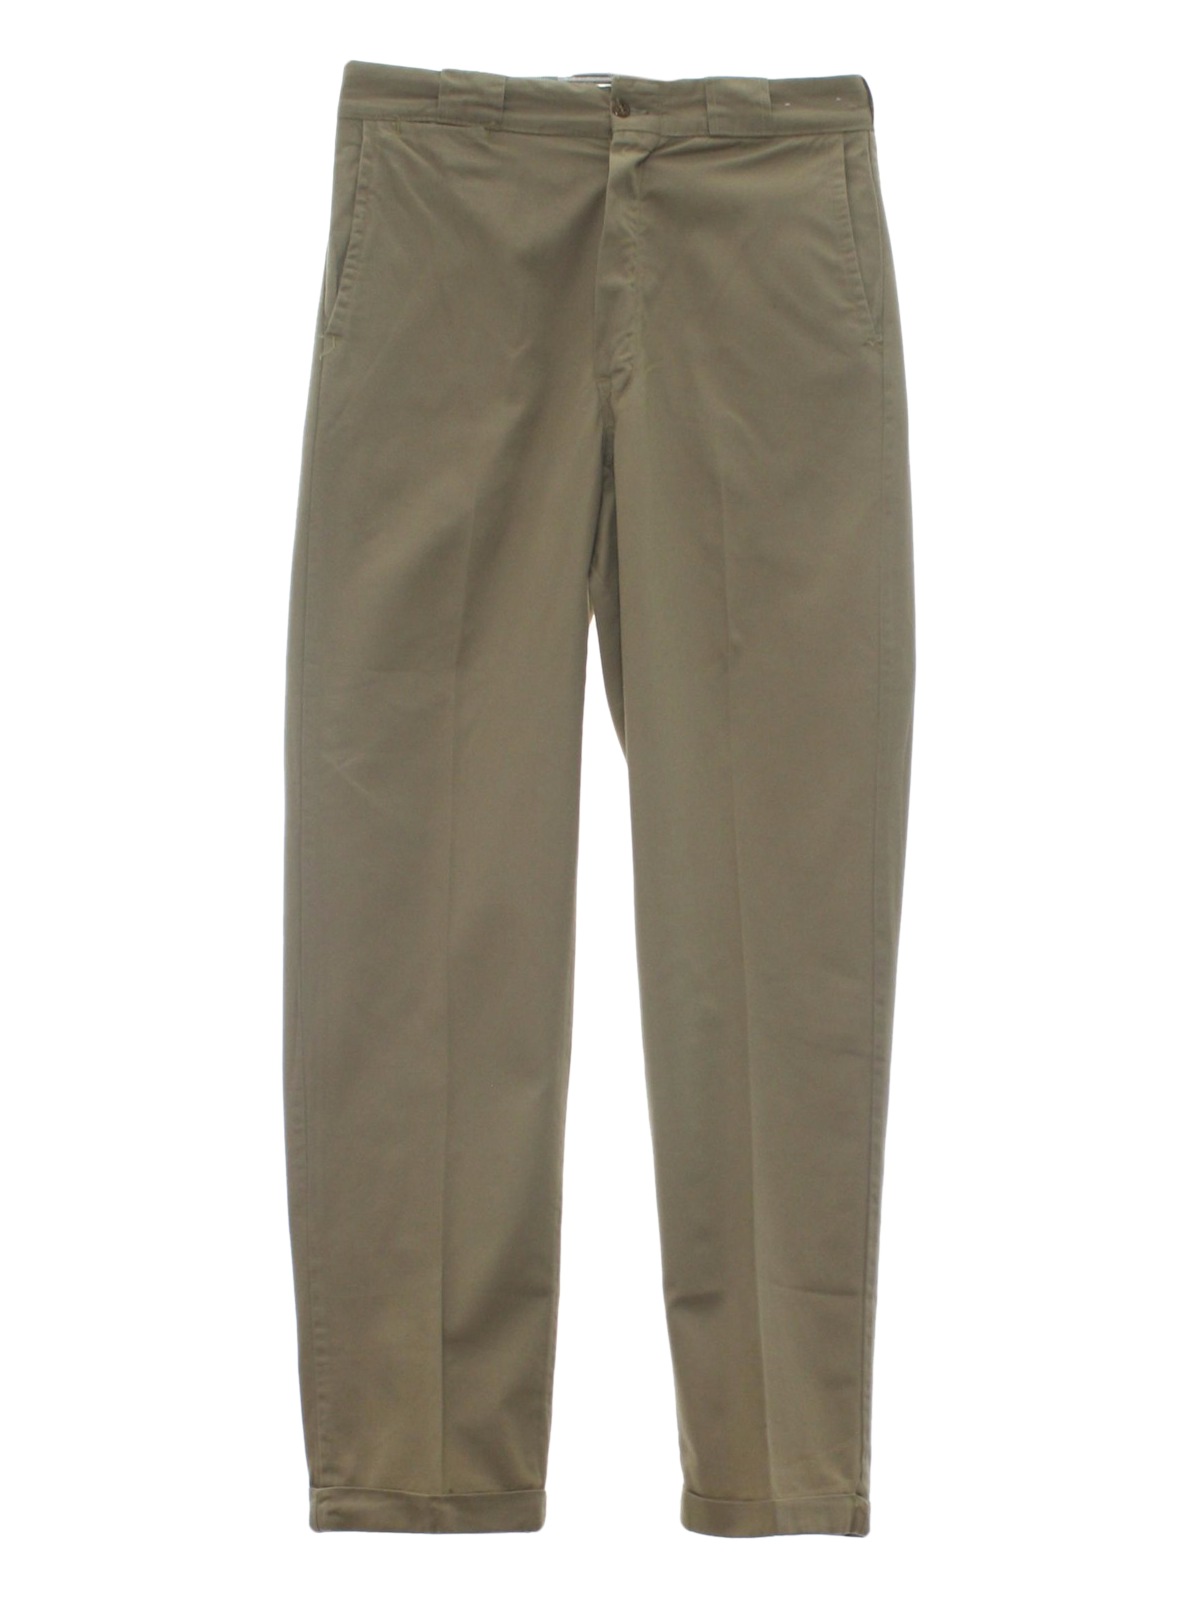 Sanforized 50's Vintage Pants: Early 50s -Sanforized- Mens khaki tan ...